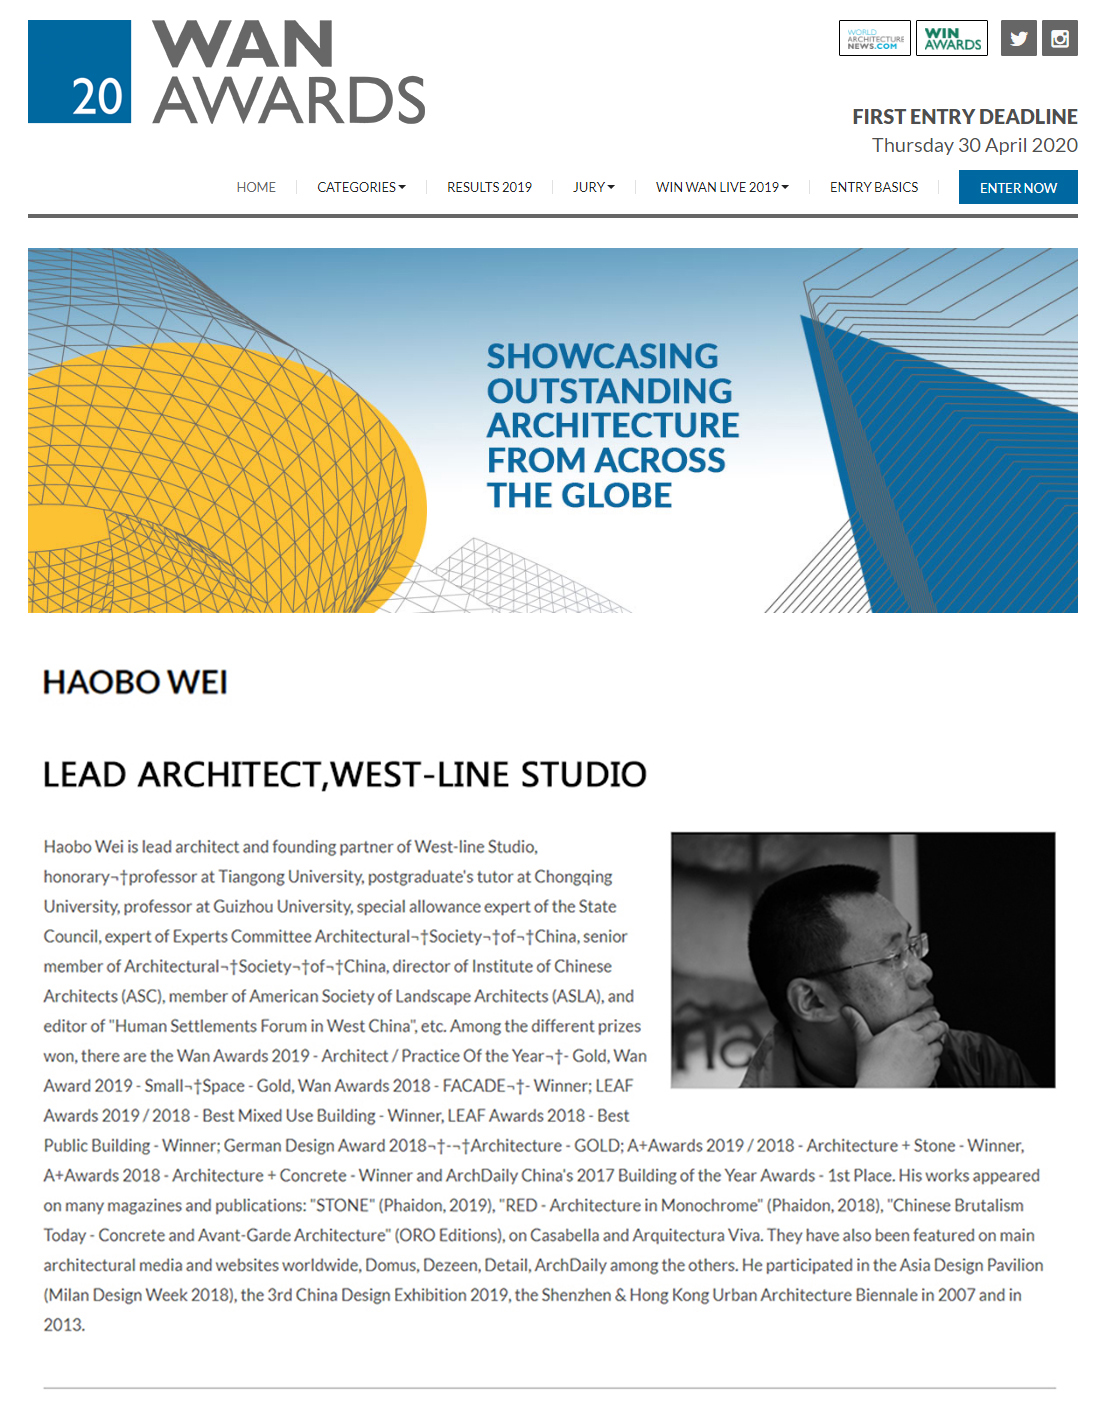 西线工作室主持建筑师魏浩波担当著名世界建筑新闻大奖（WAN AWARDS）国际评委